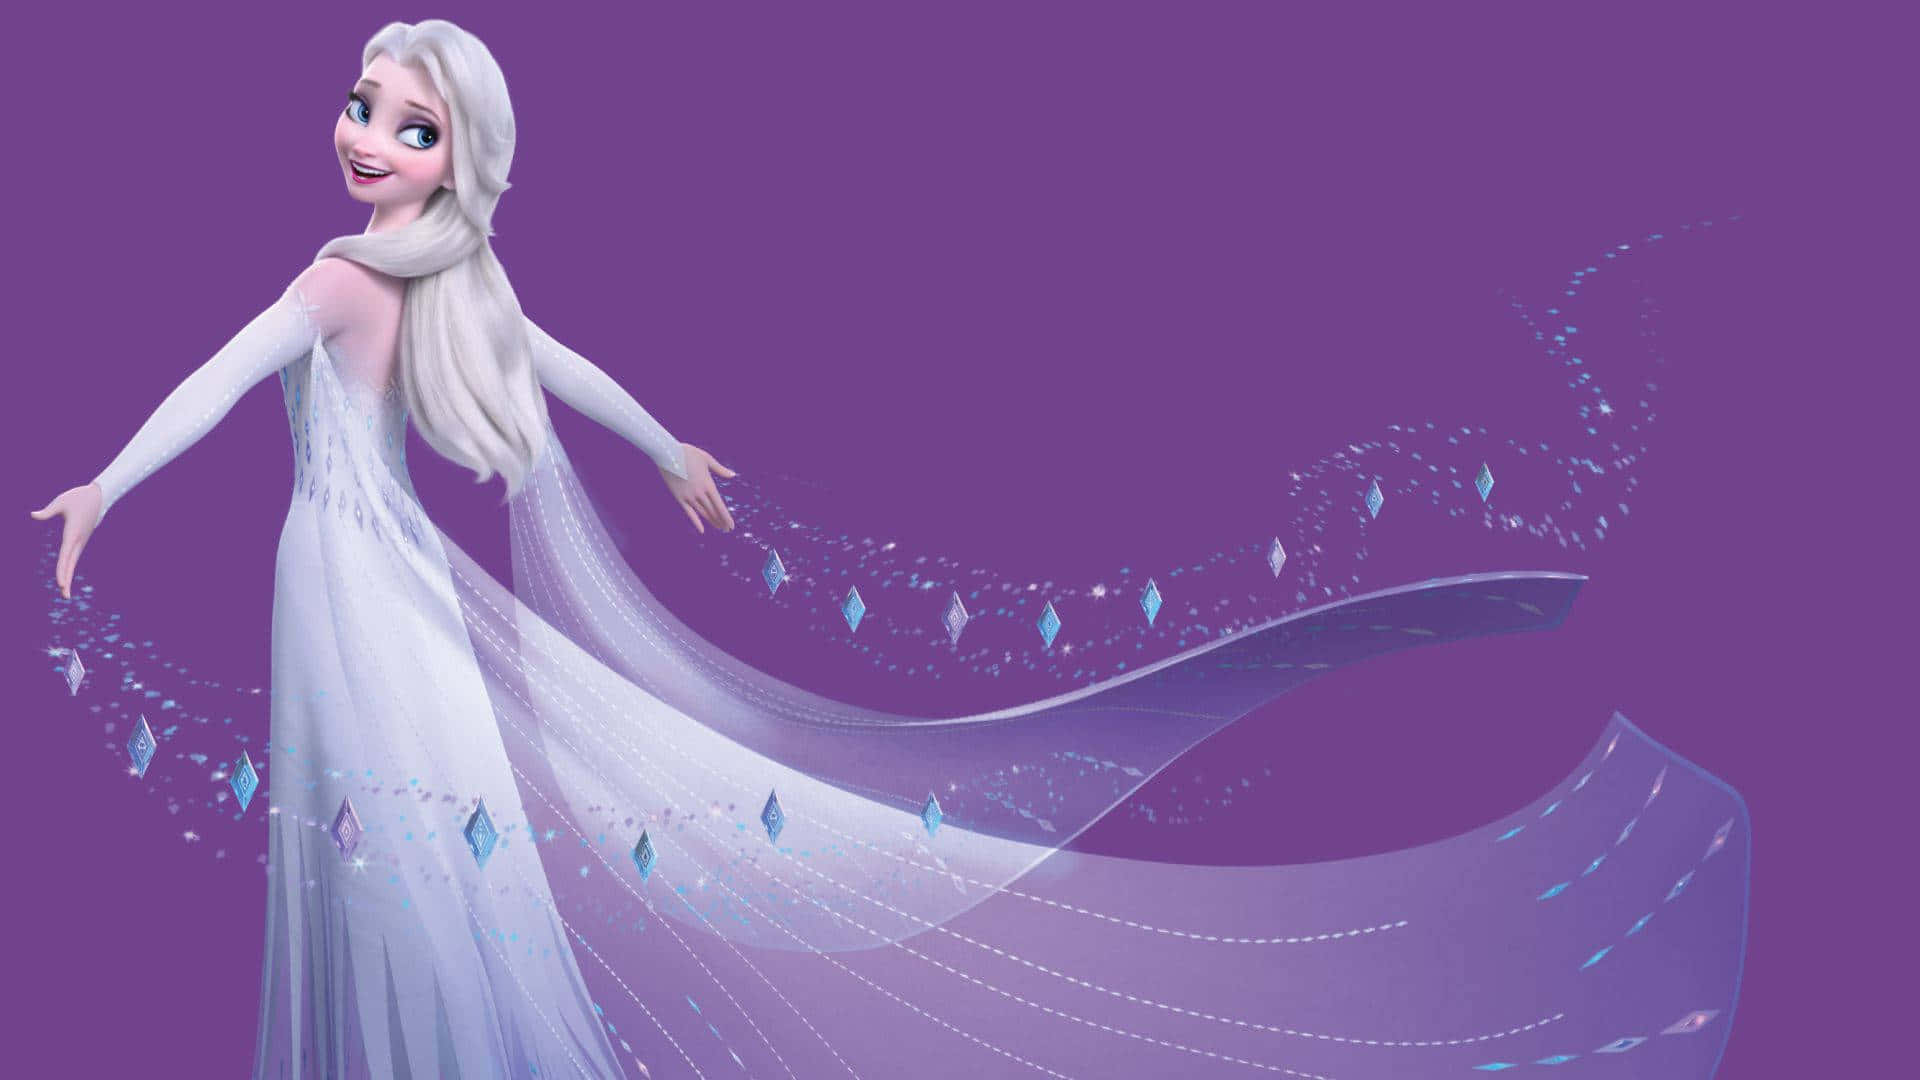 Anna and Elsa begin their adventure in Frozen 2.